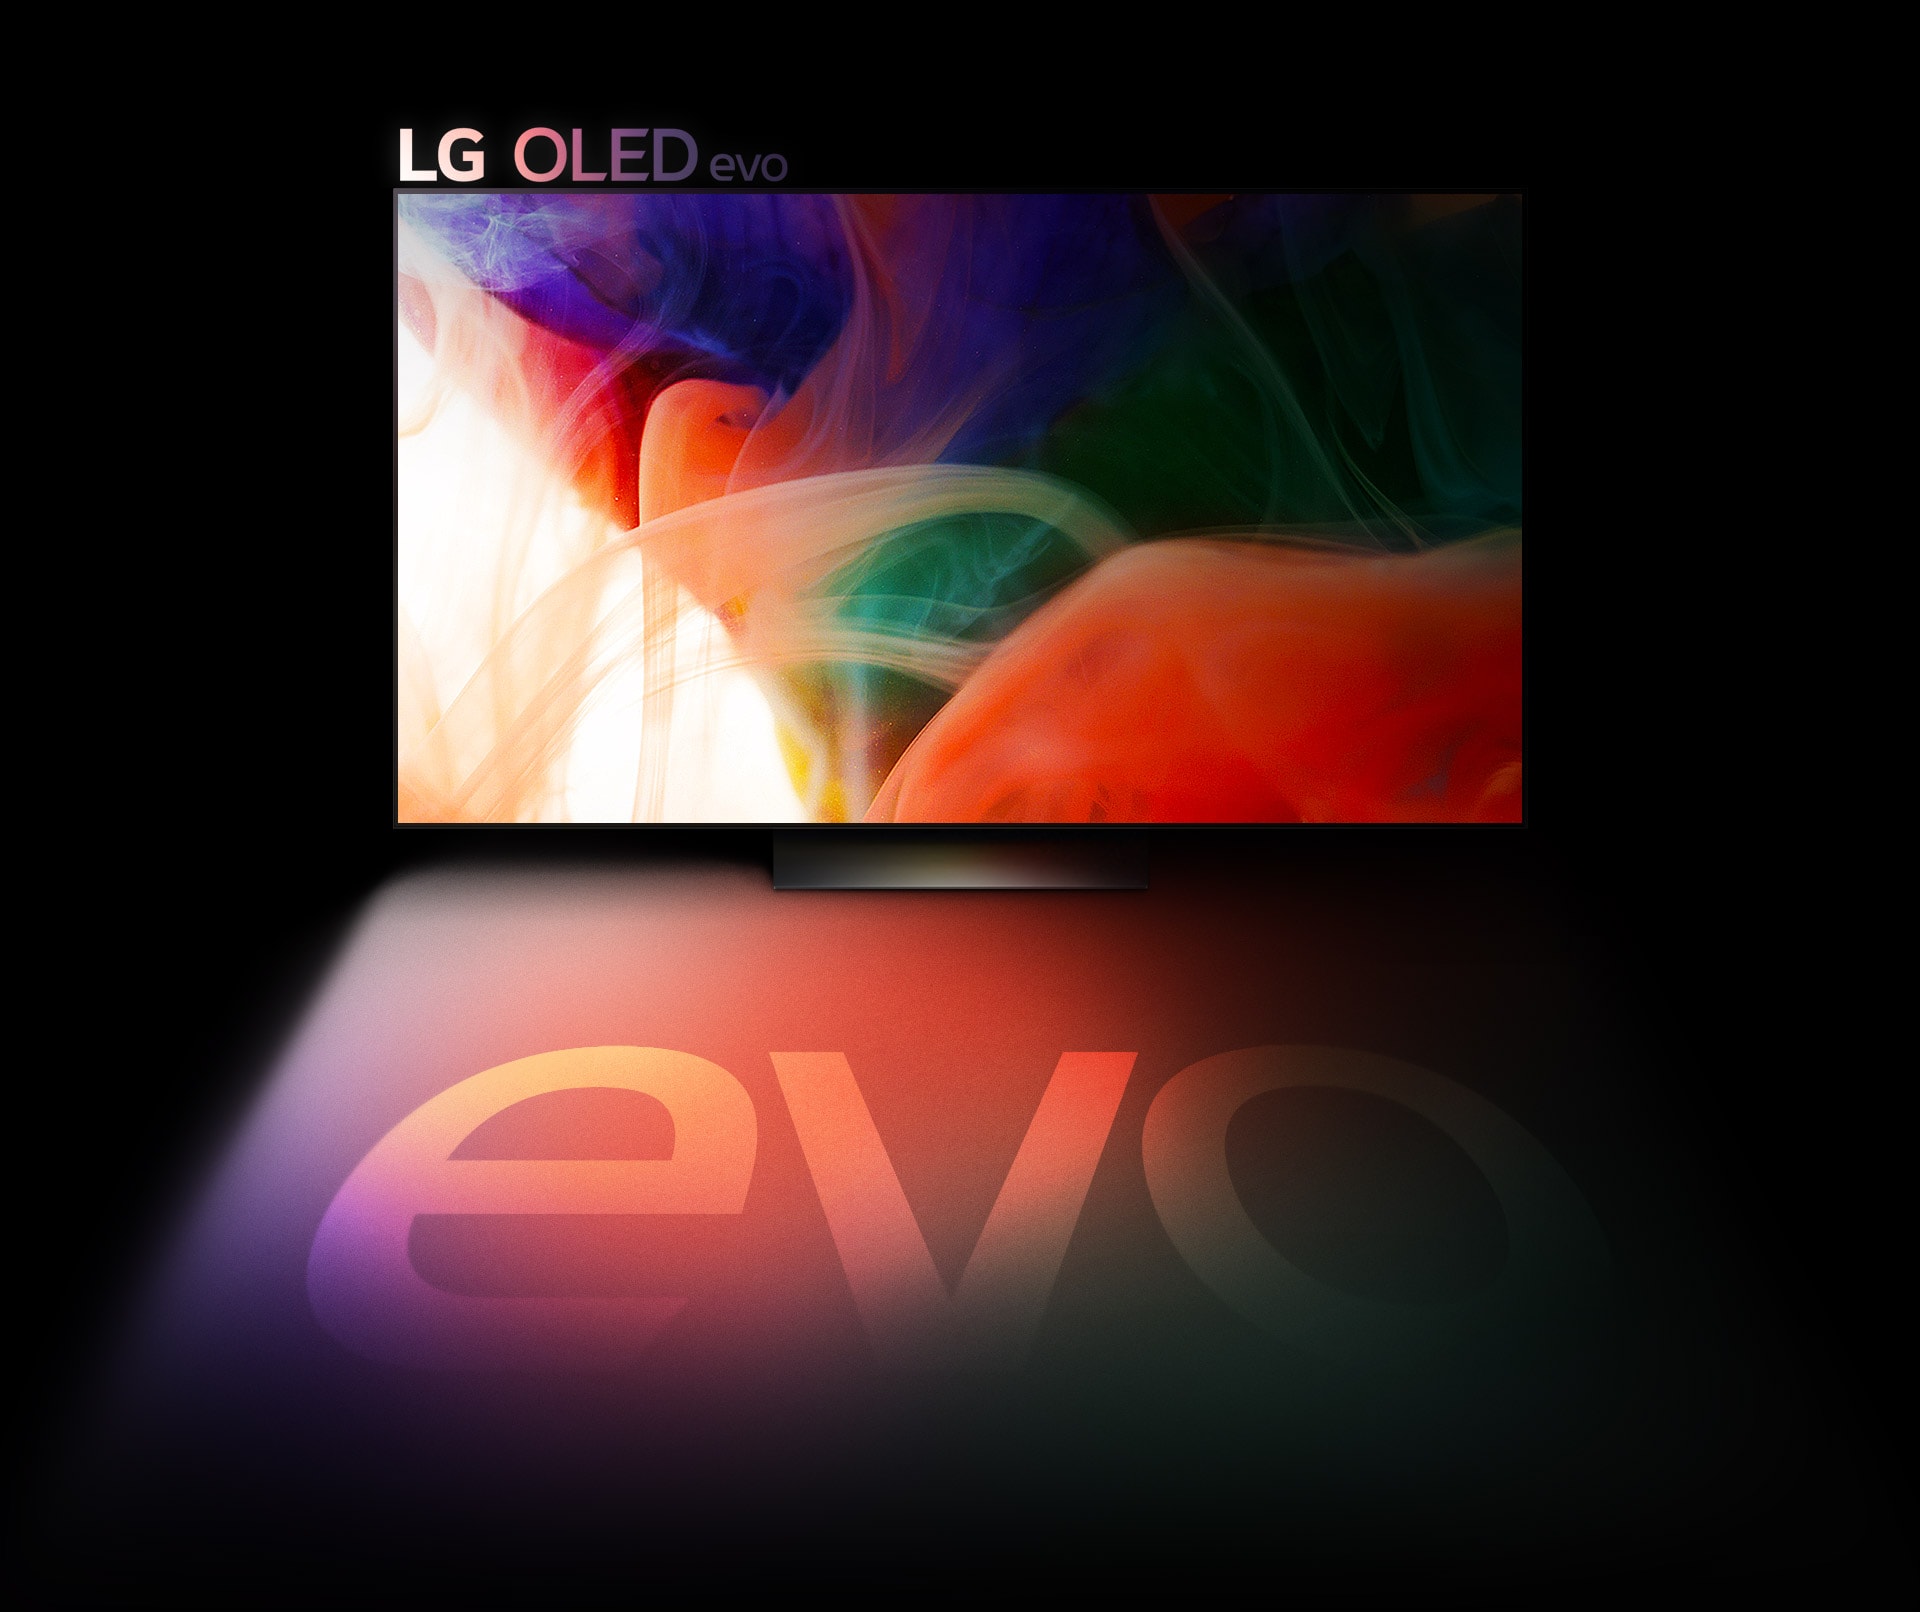 Hình ảnh trừu tượng đầy màu sắc được hiển thị trên TV LG OLED evo